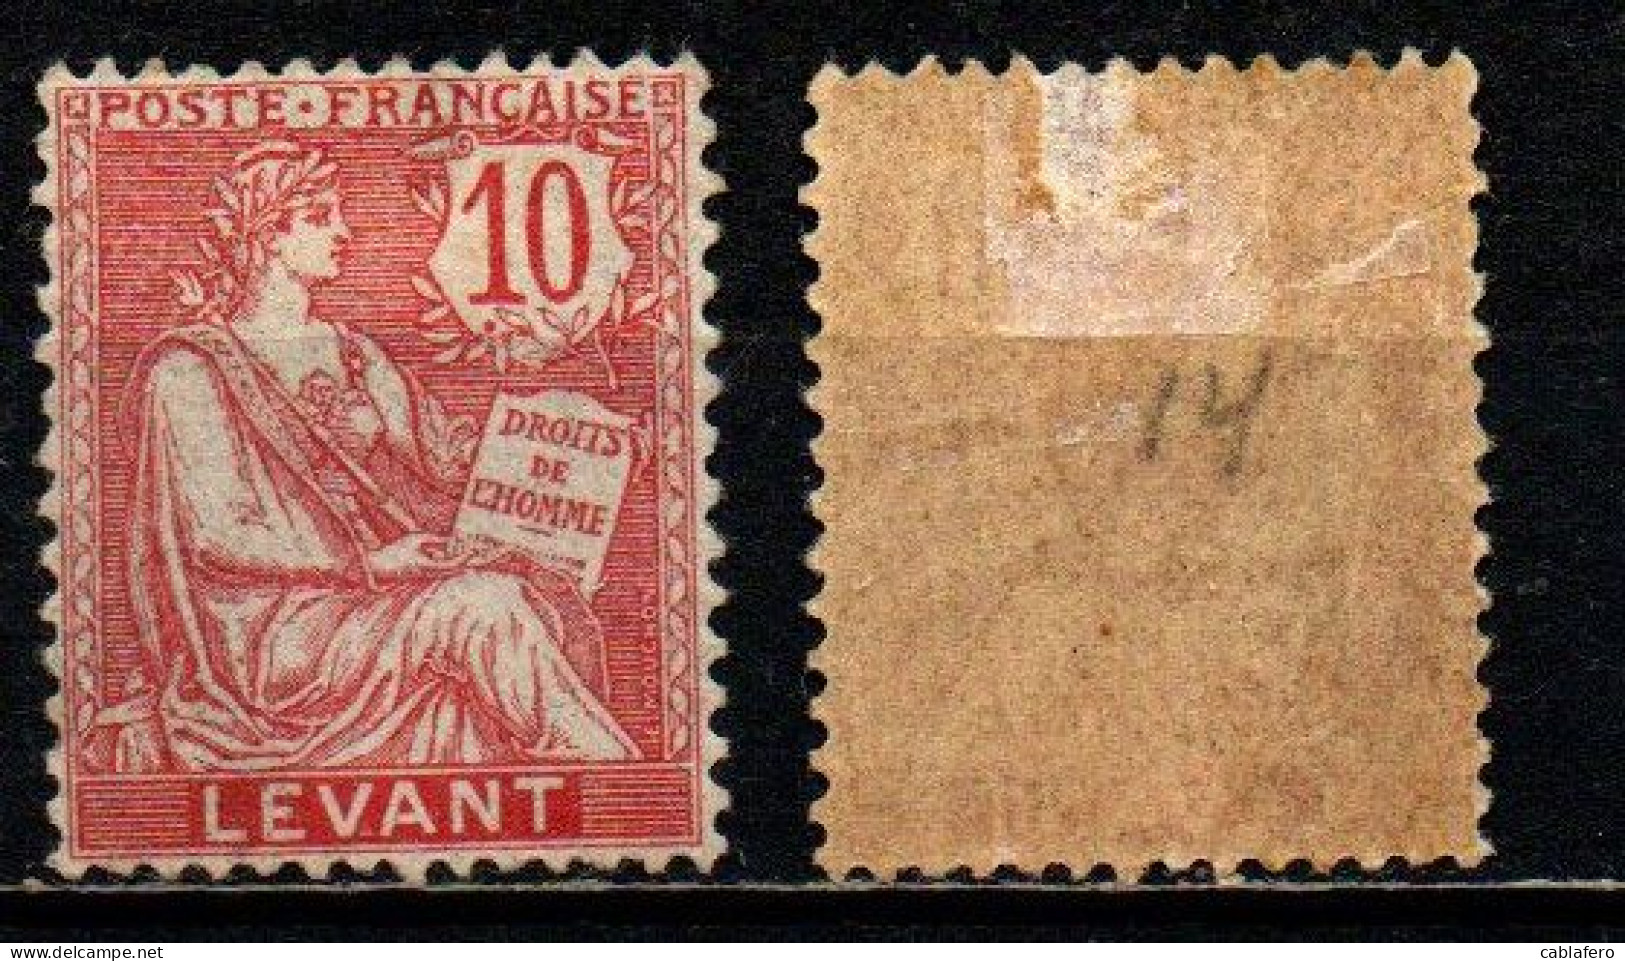 FRANCIA - UFFICIO LEVANTE - 1902 - ALLEGORIA TIPO "MOUCHON" - 10 C. - MH - Unused Stamps